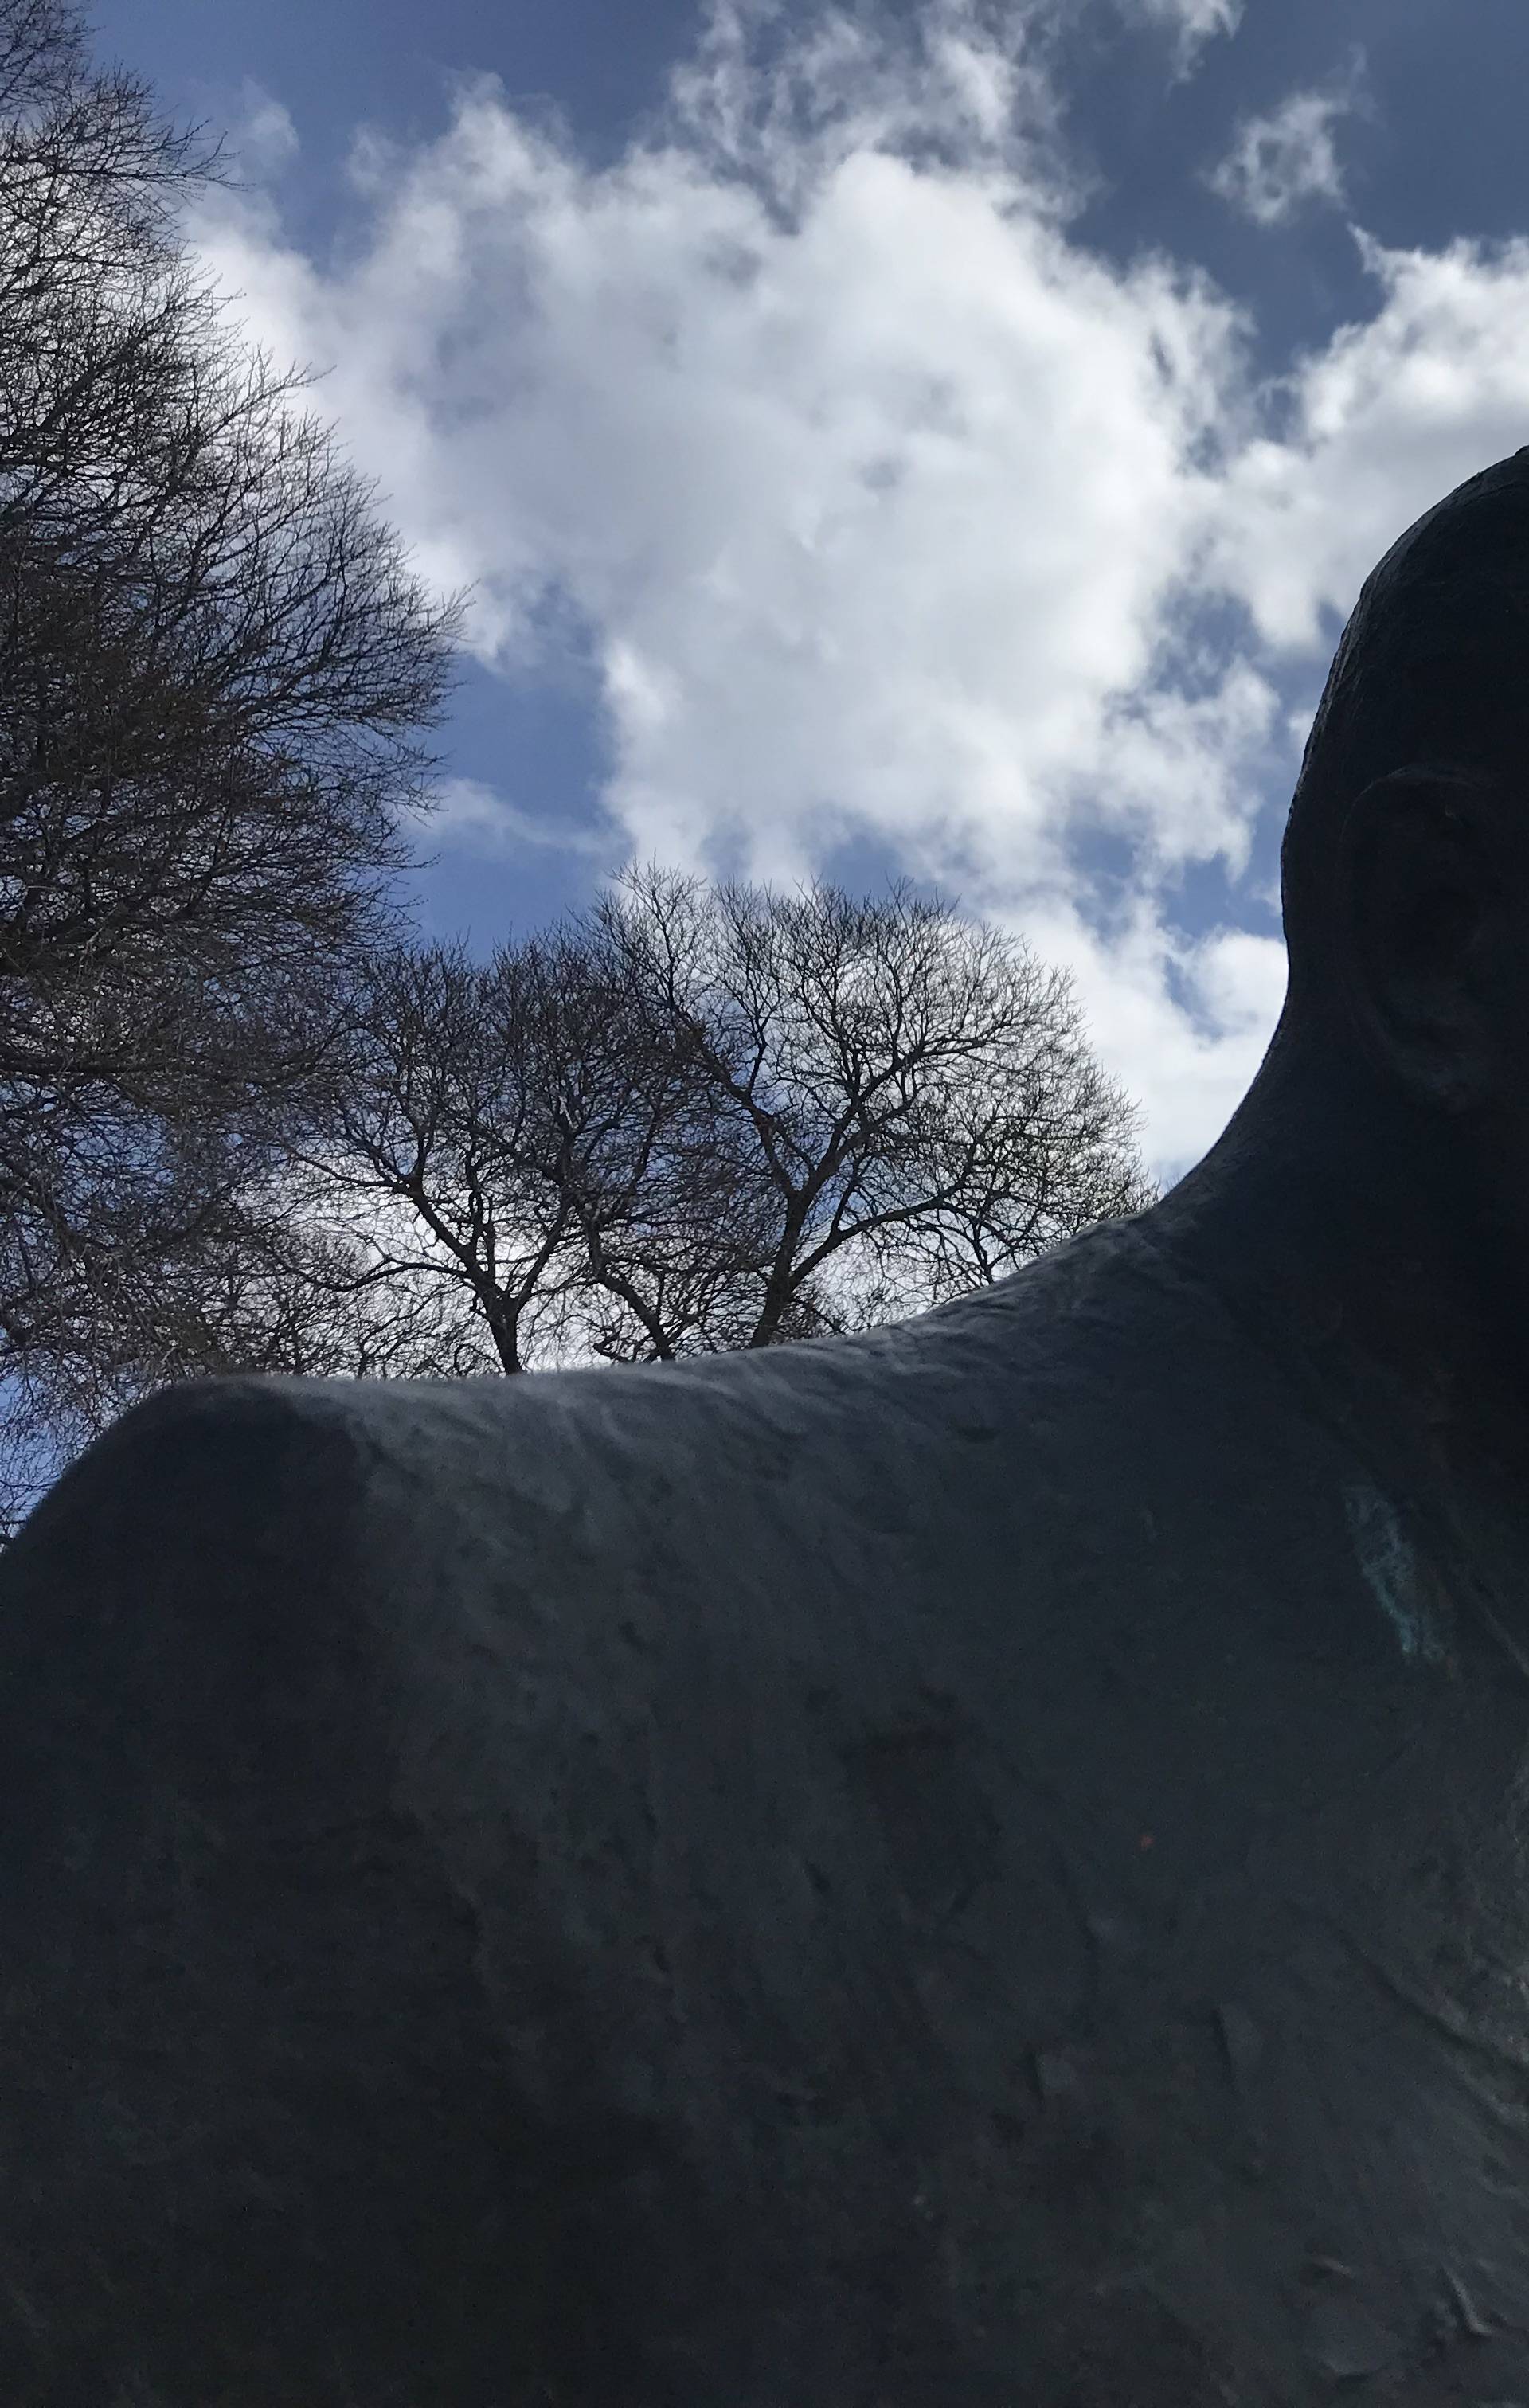 Tuđmanov spomenik ponovno na meti: Obojili mu oči crveno